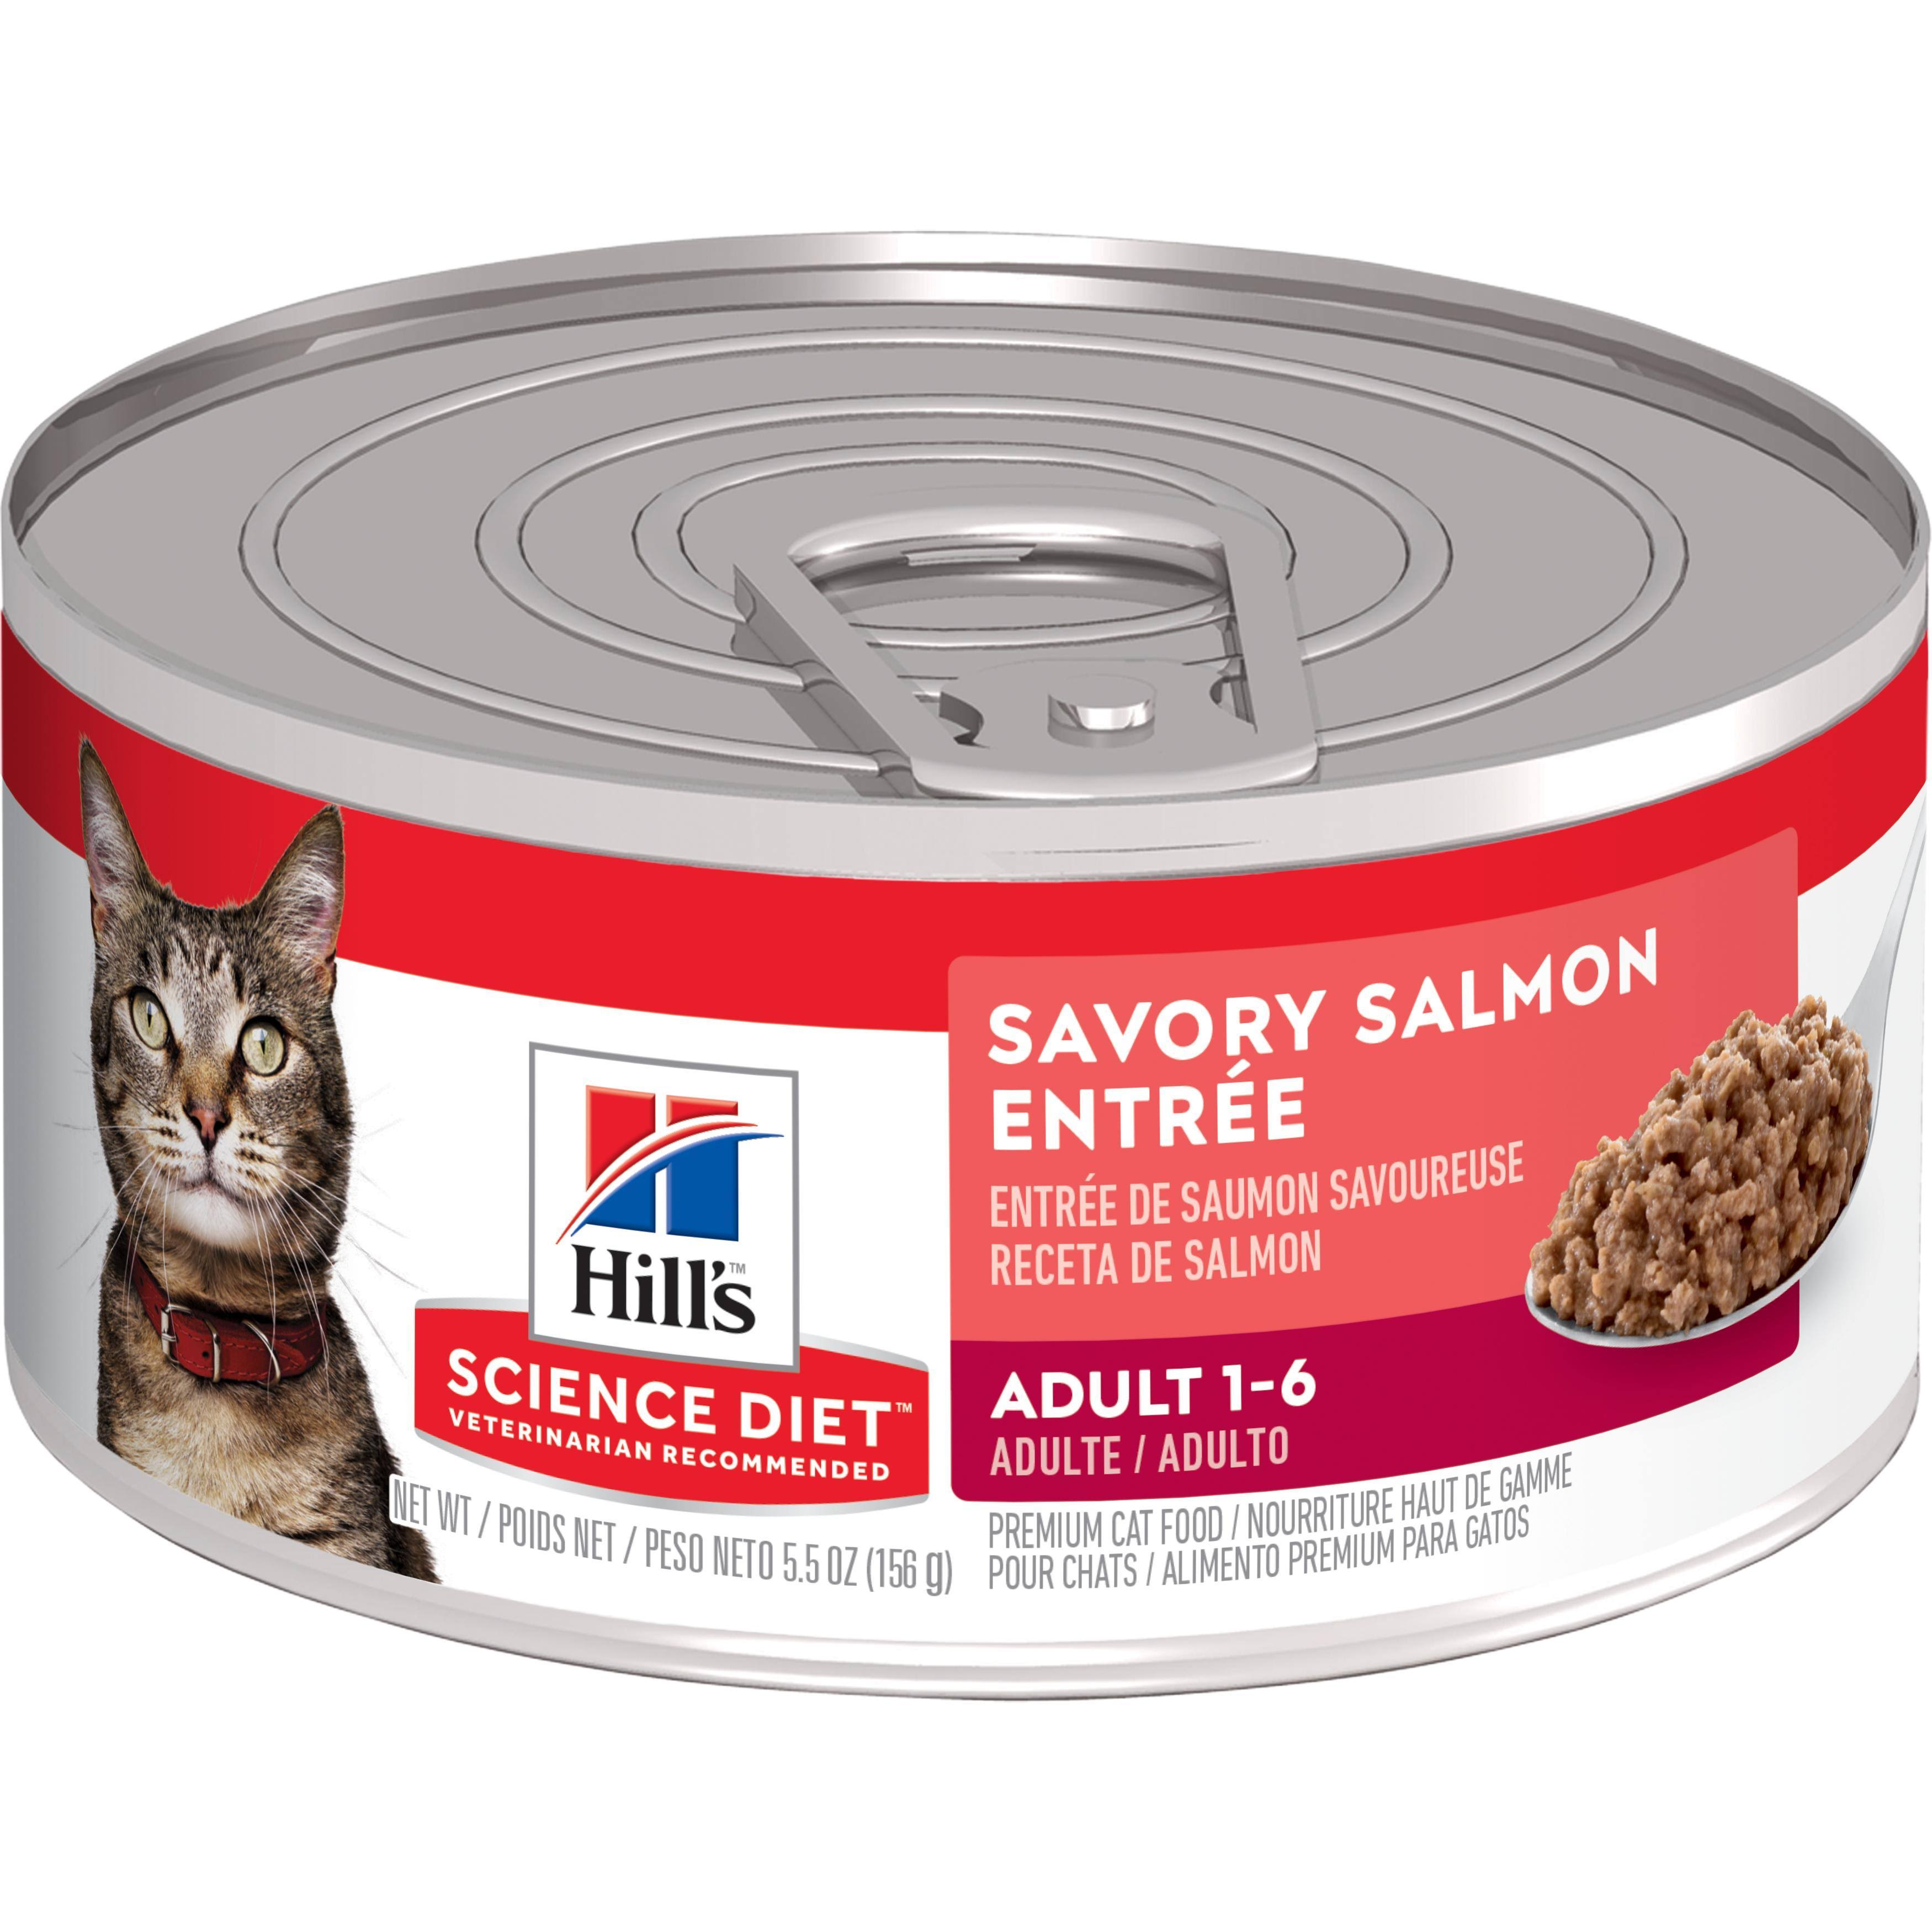 Hill's Science Diet Minced Premium Cat Food - Savory Salmon Entrée, Adult 1-6